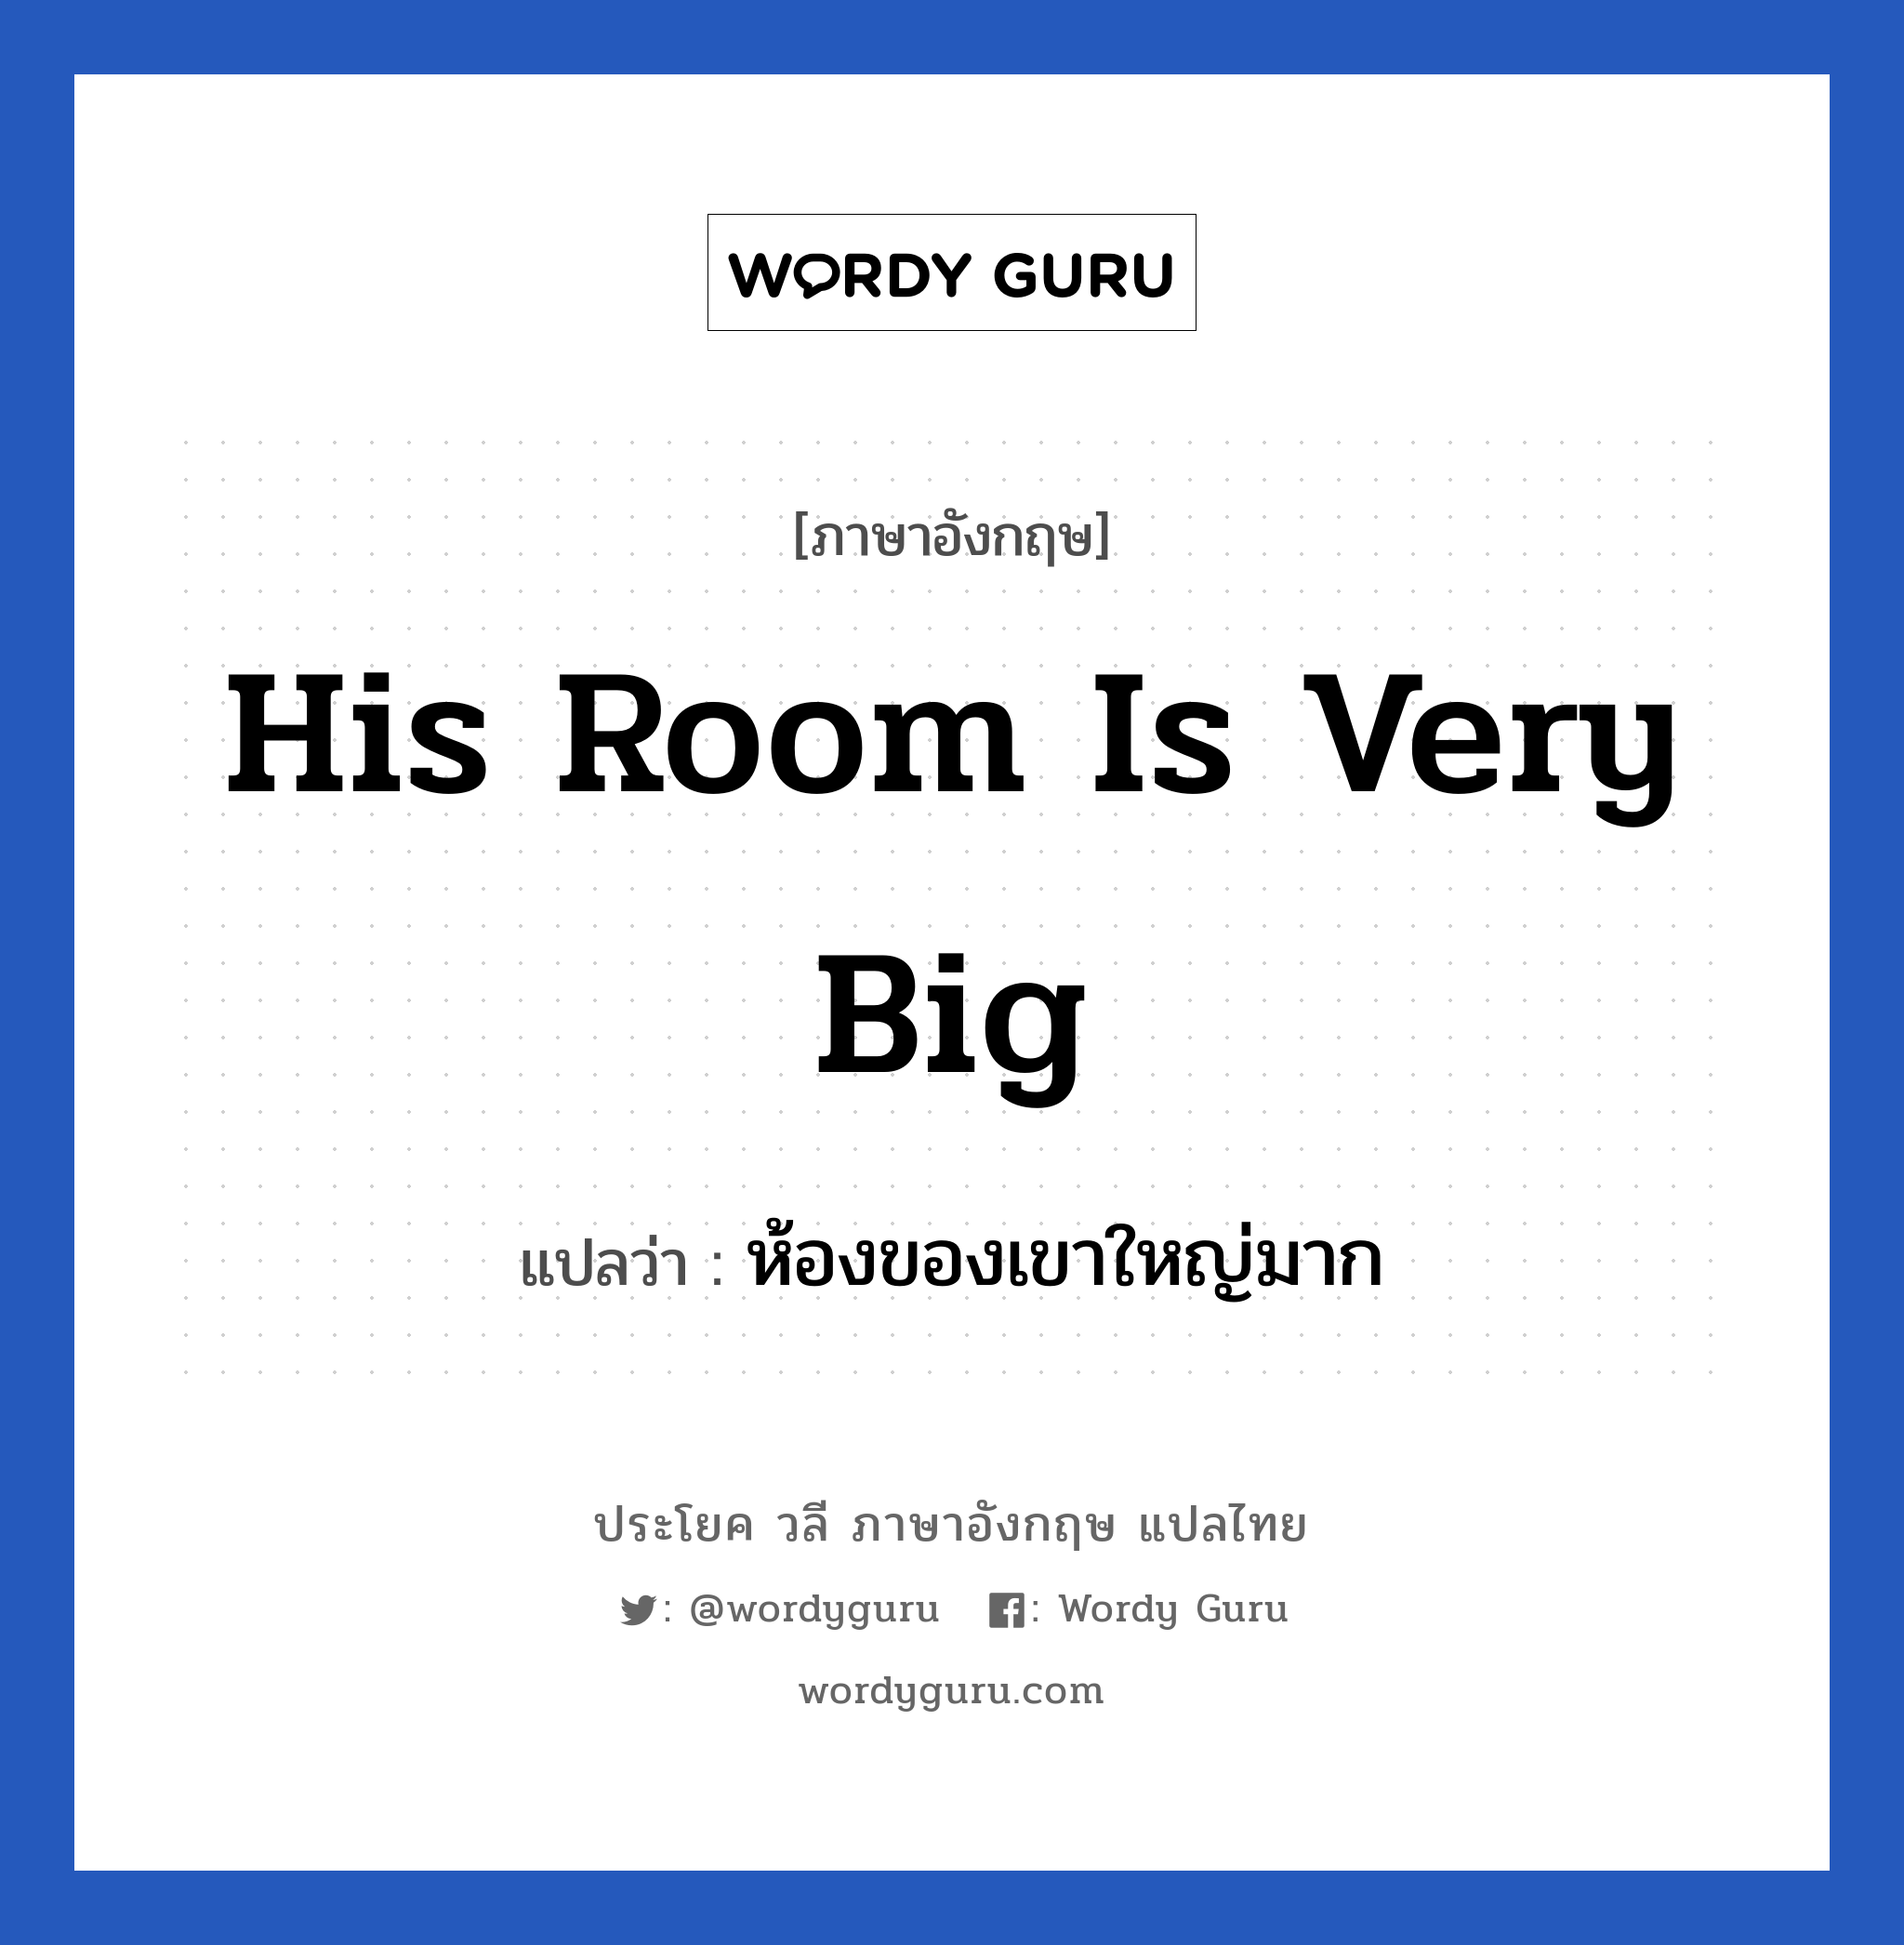 His room is very big แปลว่า?, วลีภาษาอังกฤษ His room is very big แปลว่า ห้องของเขาใหญ่มาก